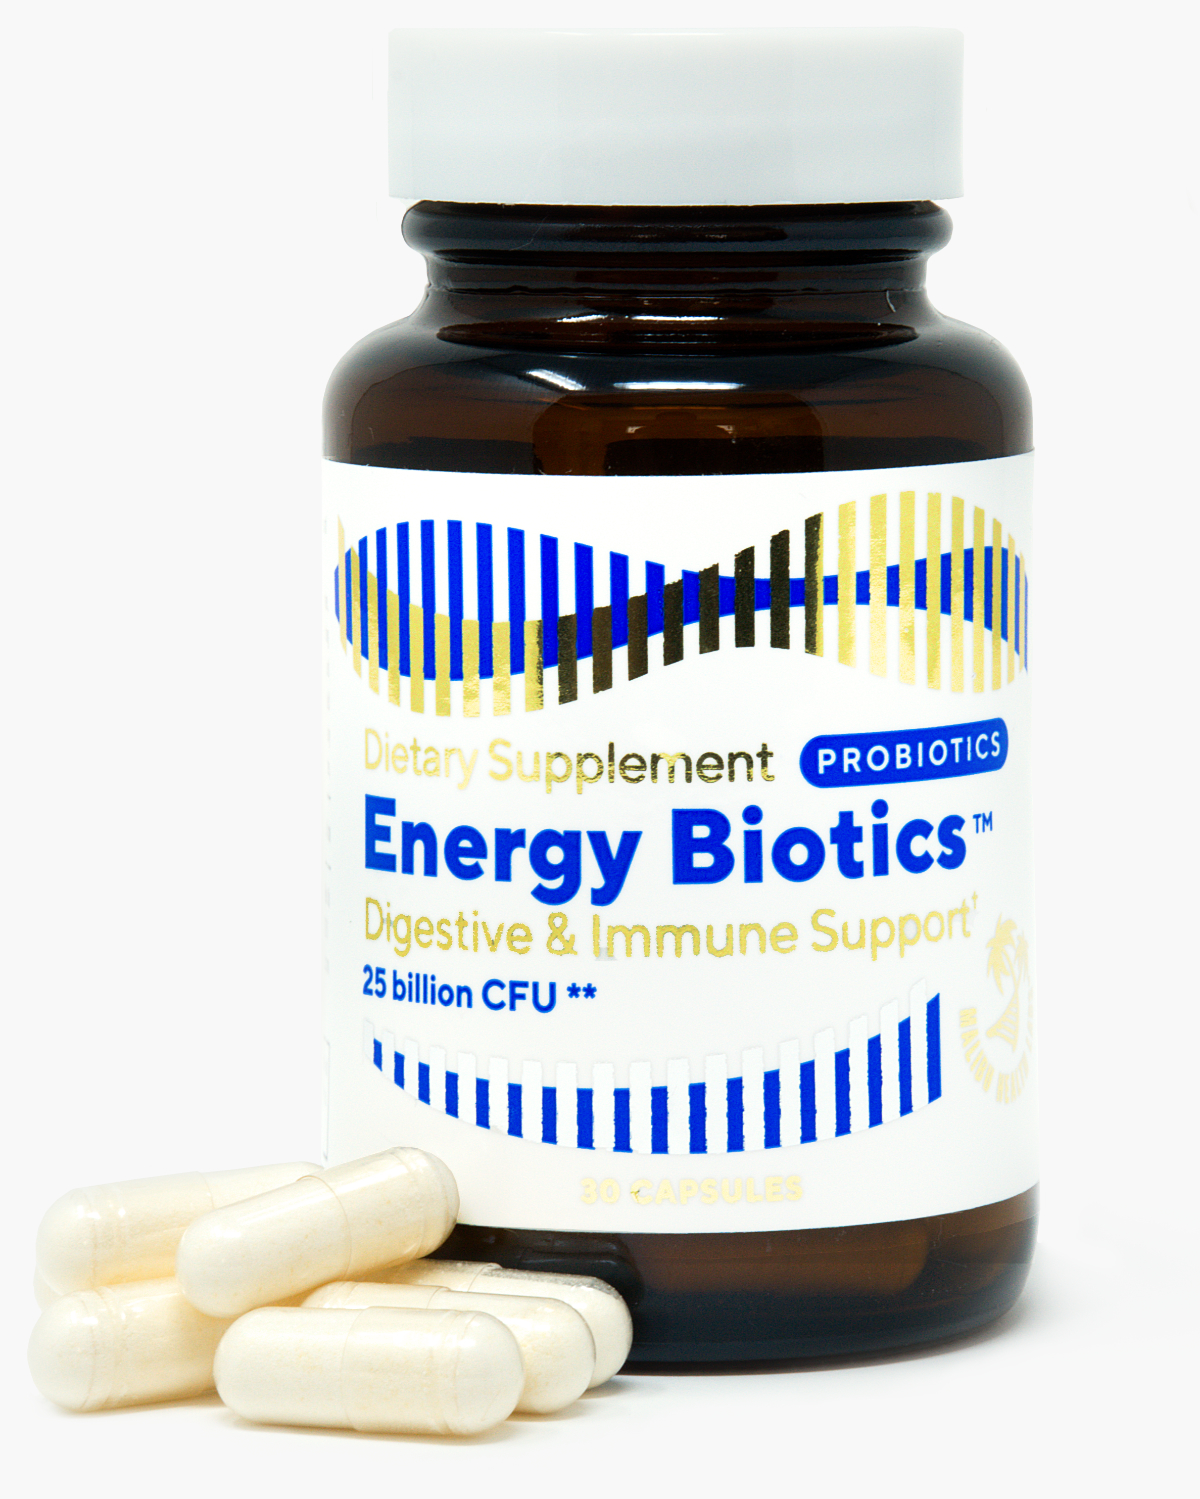 Energy Biotics™